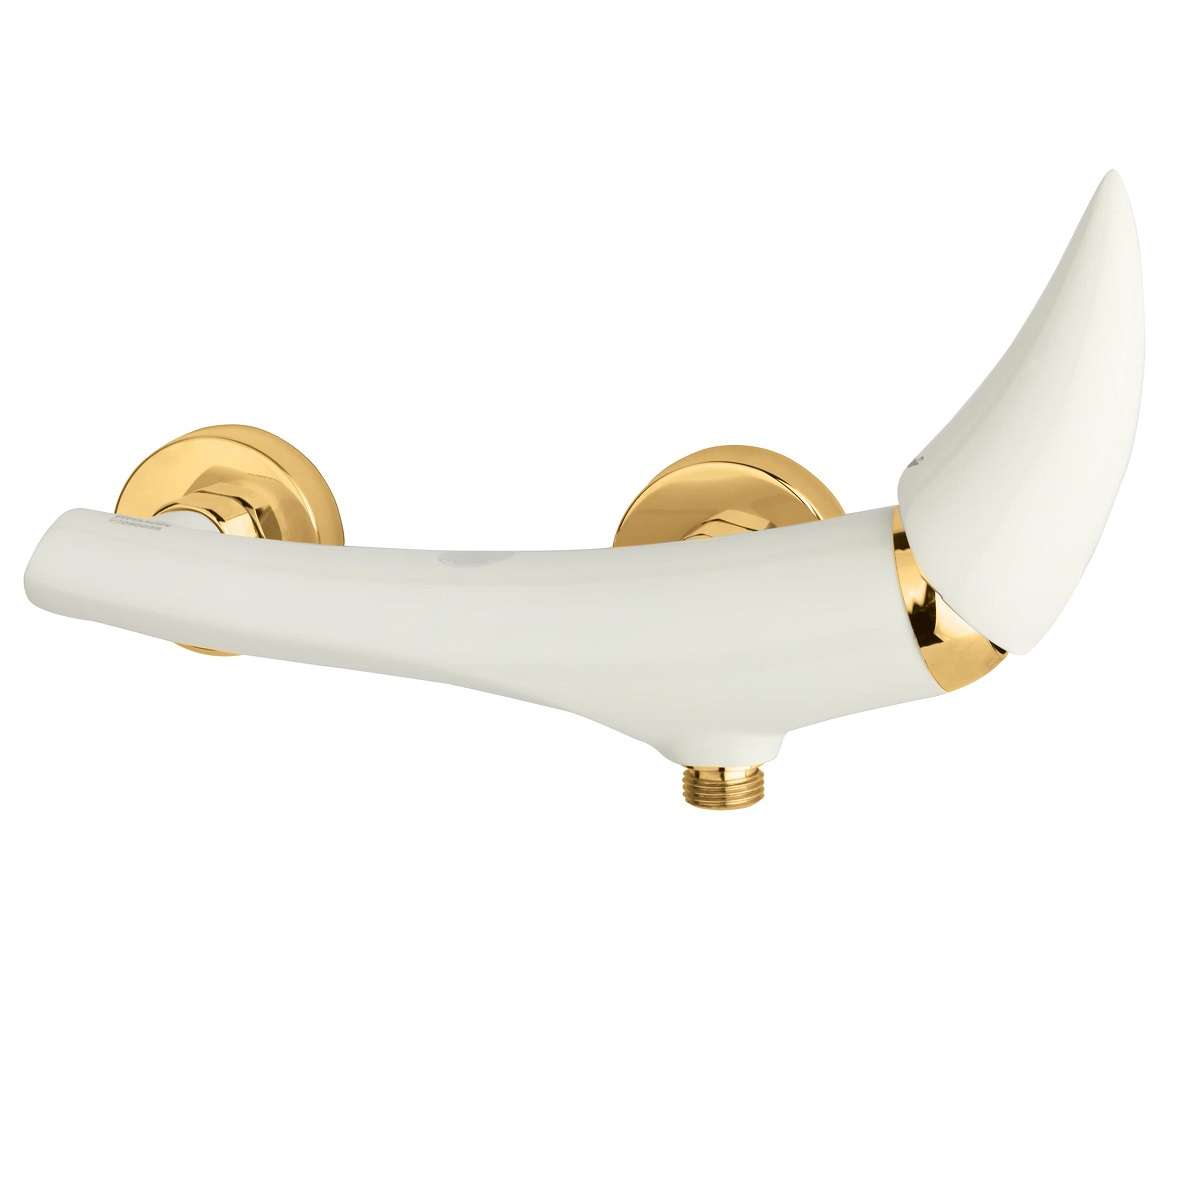 شیر توالت راسان مدل هیپو سفید طلایی